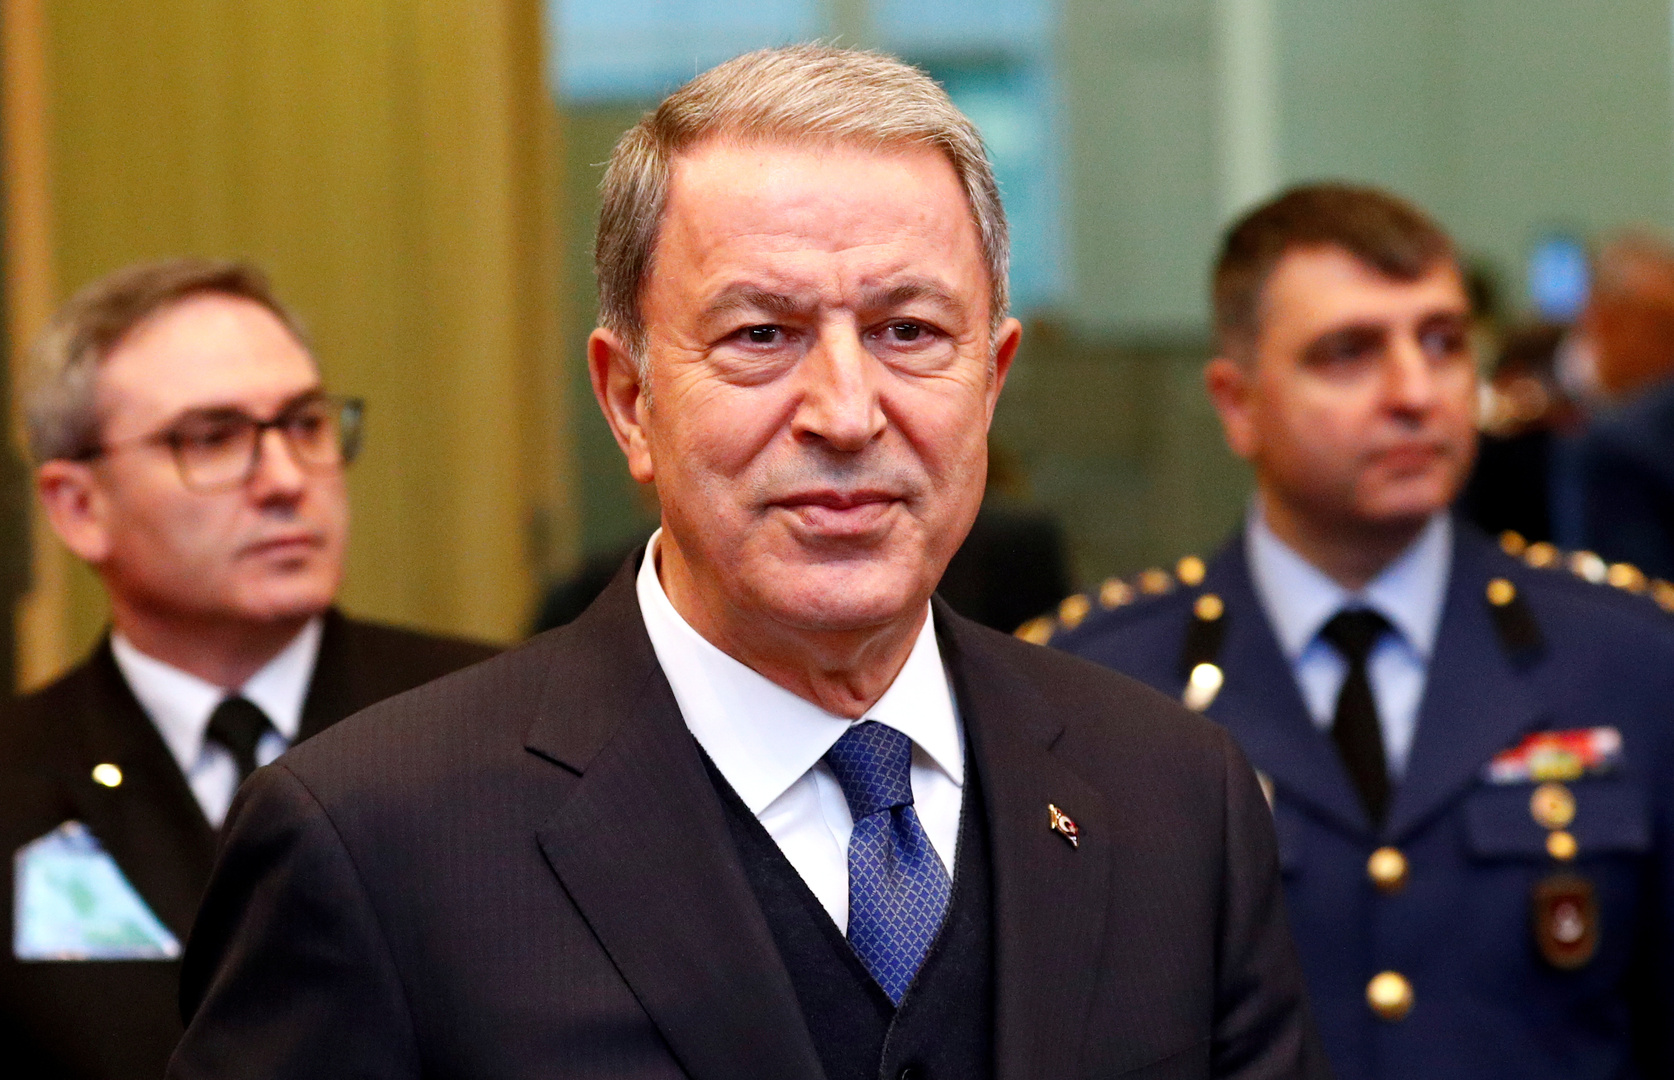 وزير الدفاع التركي: نؤمن بإمكانية حل المشاكل مع اليونان بالحوار والوسائل السلمية